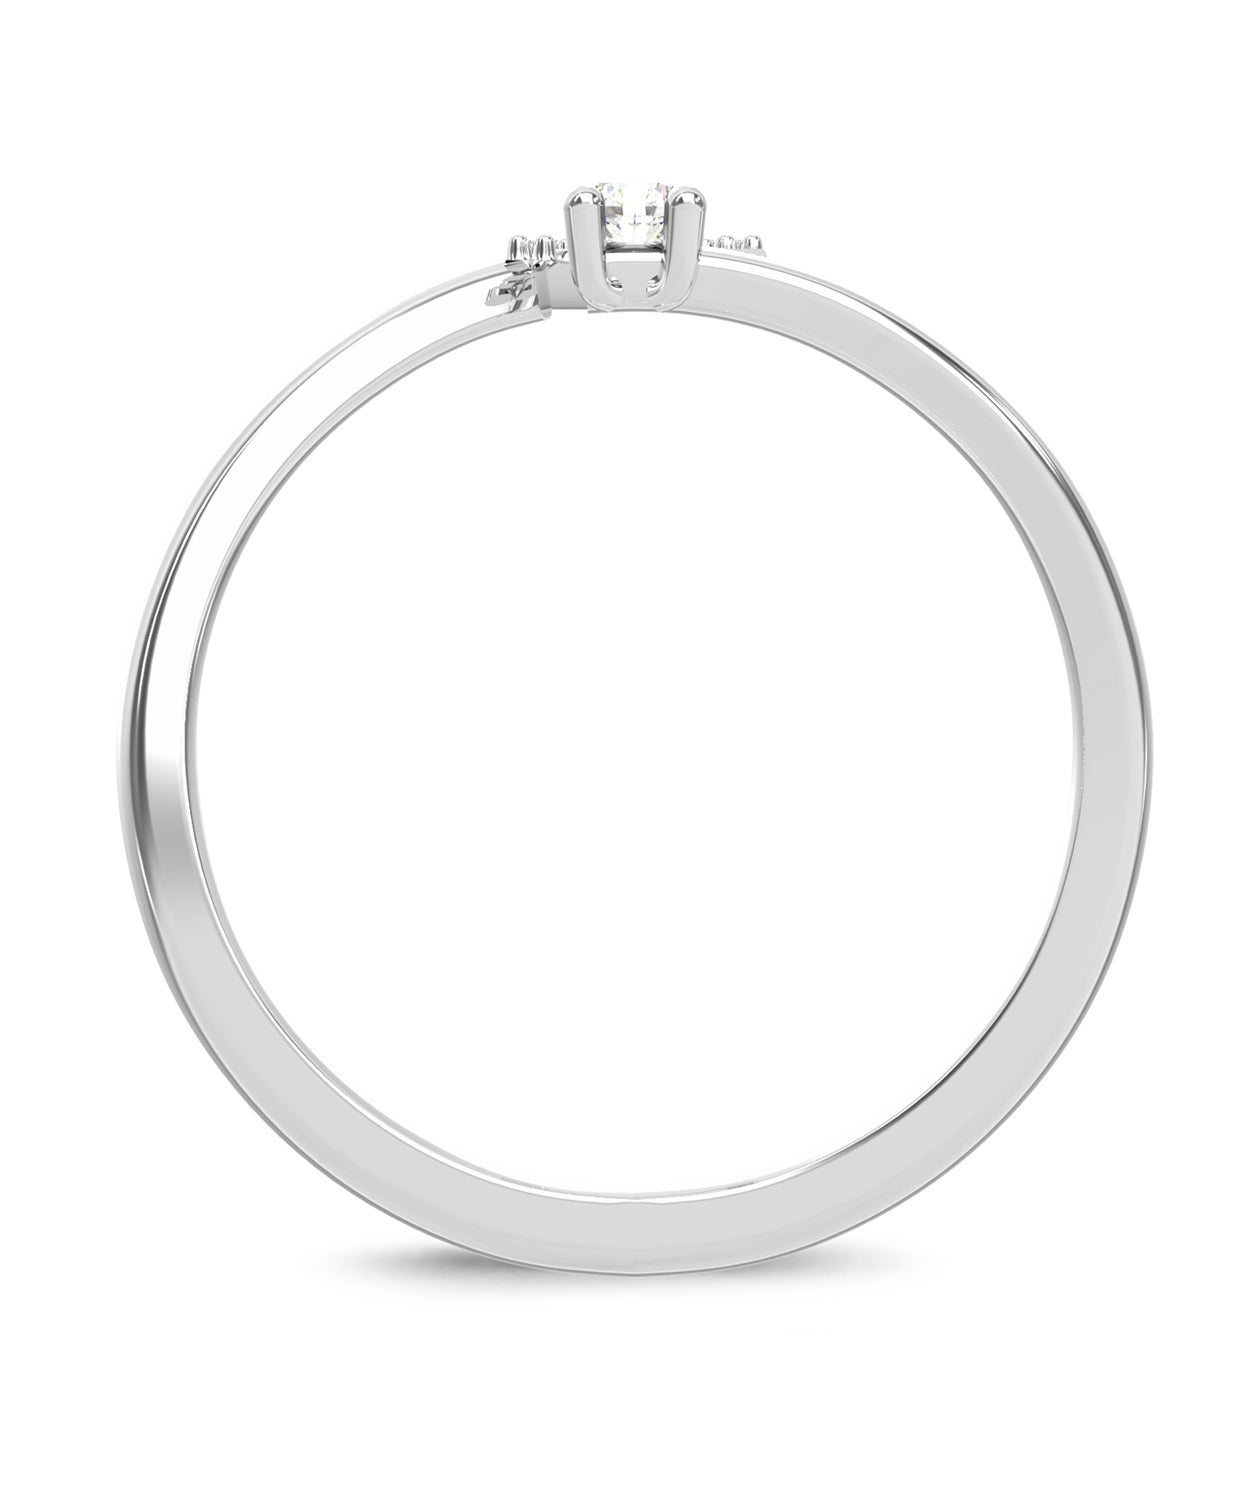 ESEMCO Diamond 18k White Gold Letter N Initial Open Ring View 2